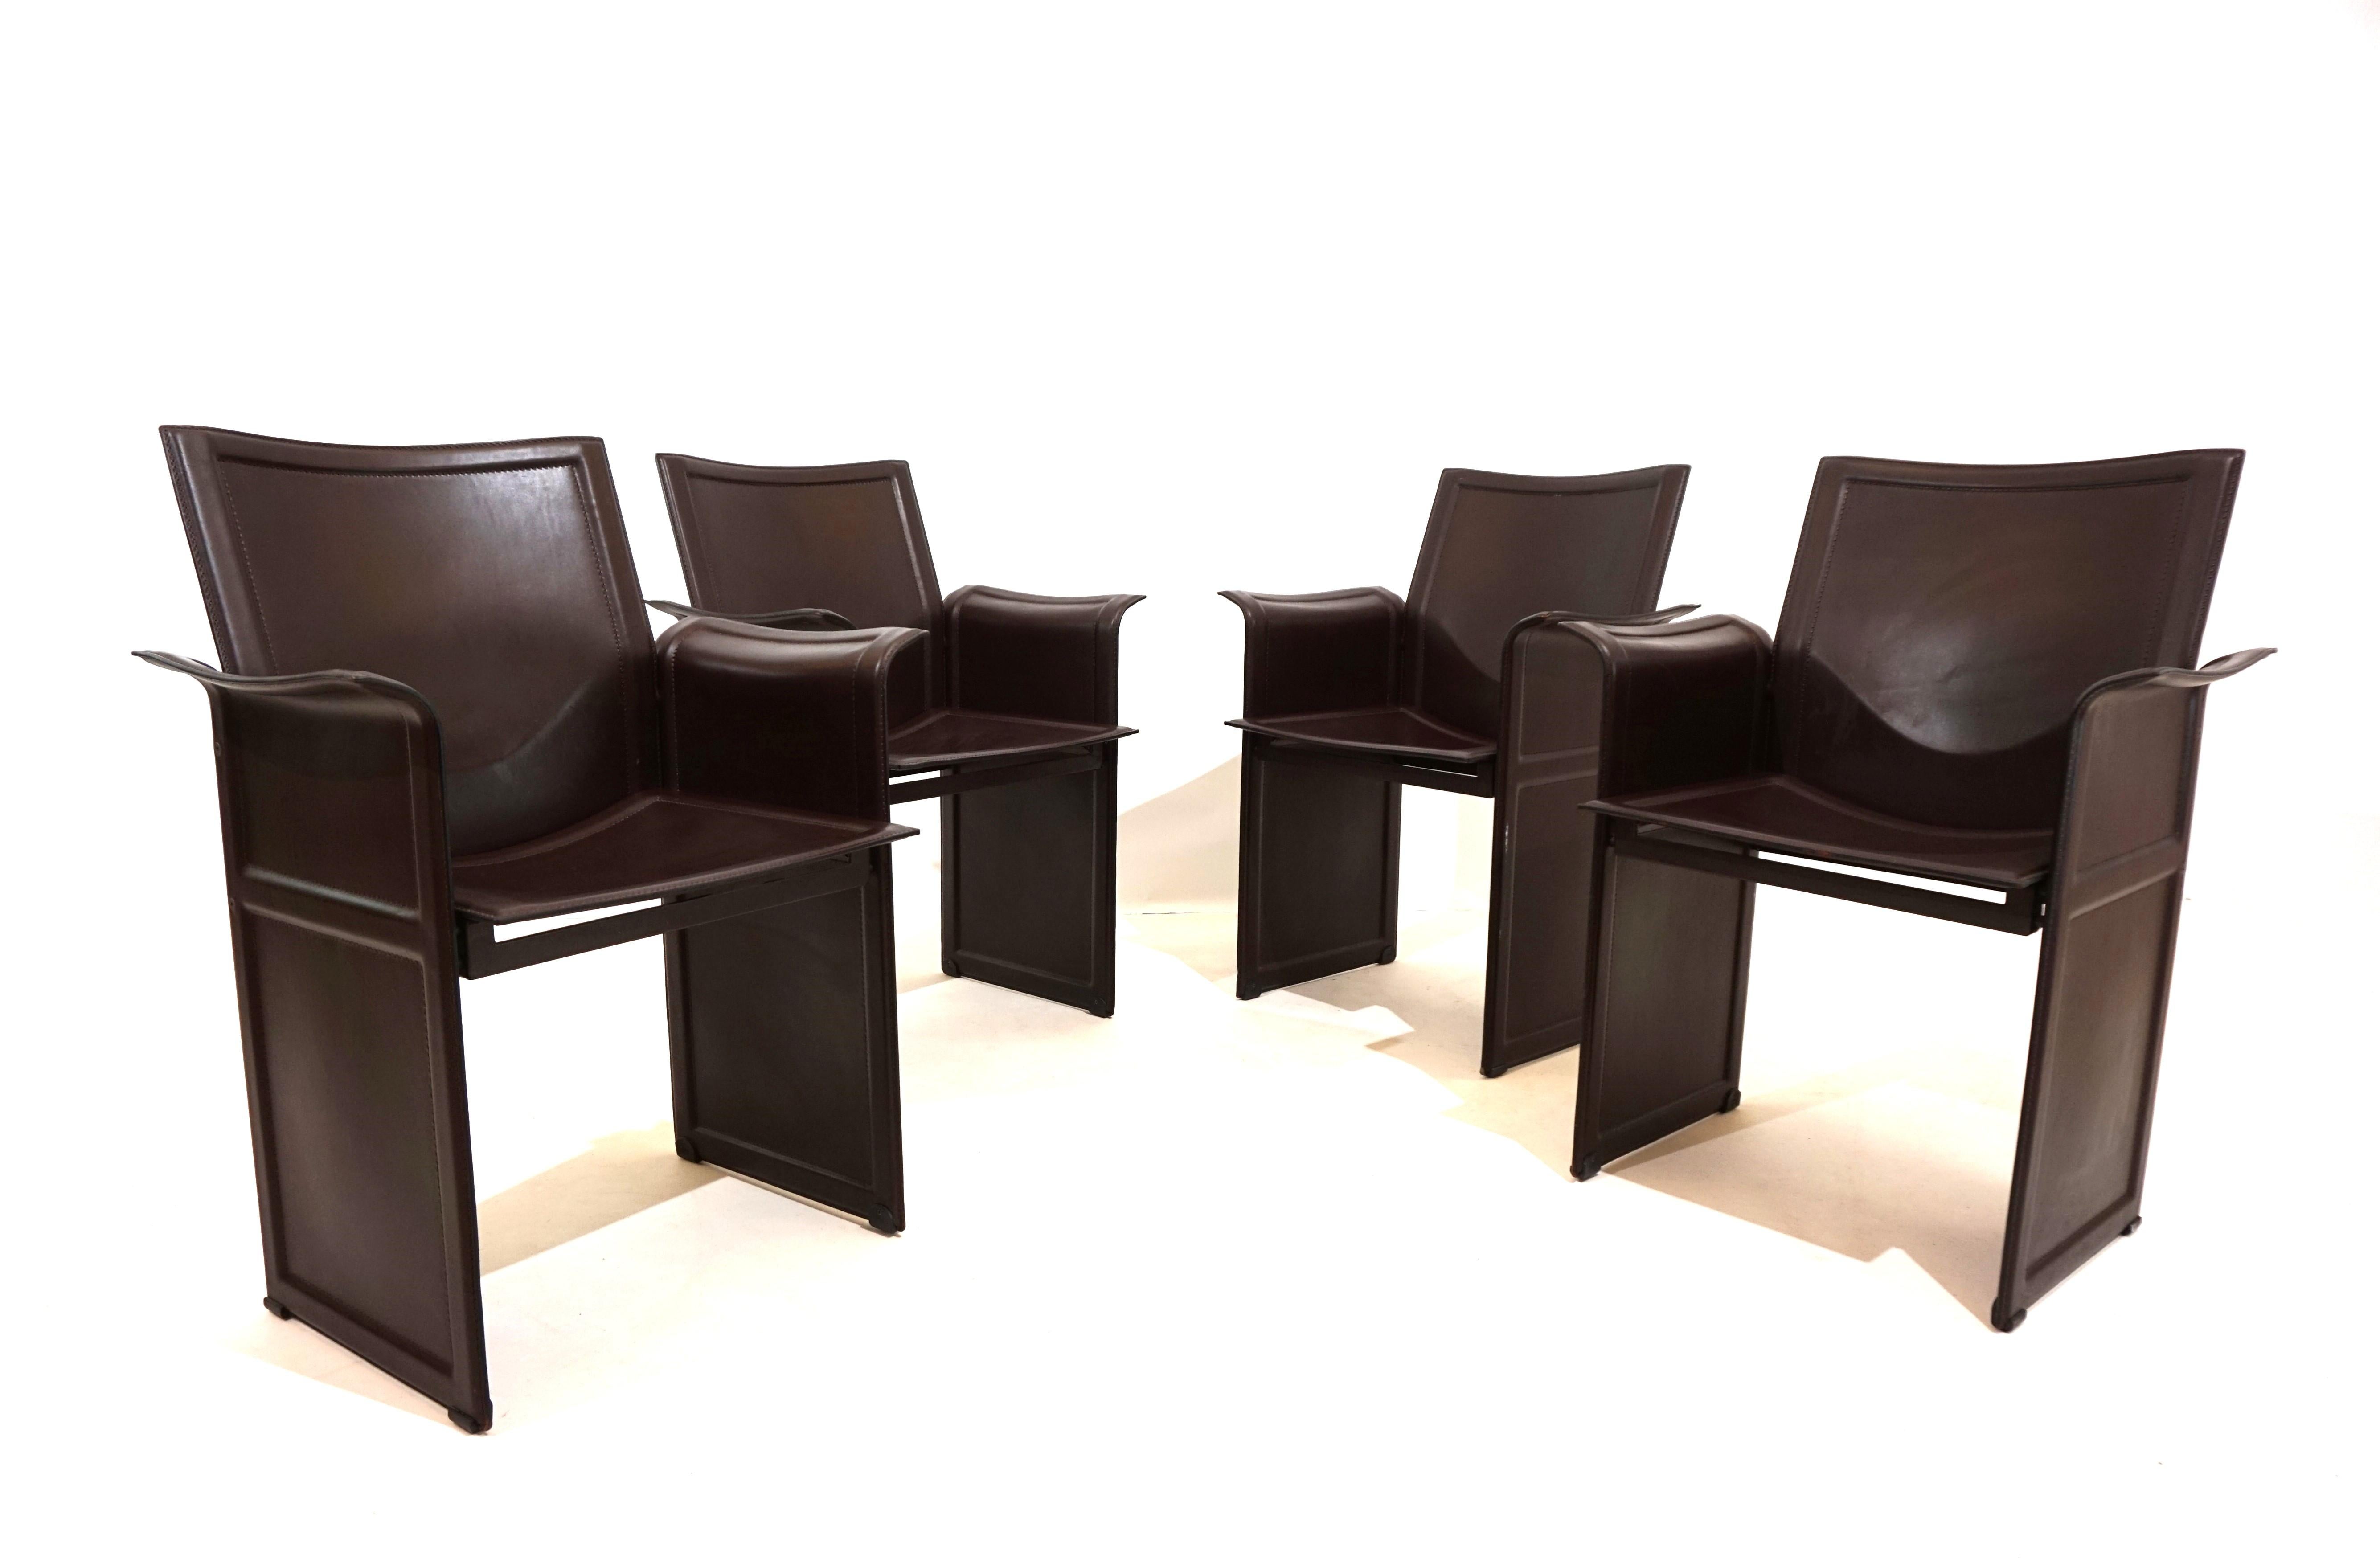 L'ensemble de 4 chaises de salle à manger Matteo Grassi en cuir de selle marron épais dans l'art du cuir italien typique.  Les chaises sont livrées dans une excellente,  Presque neuf, état. Les sièges et les dossiers présentent peu de signes